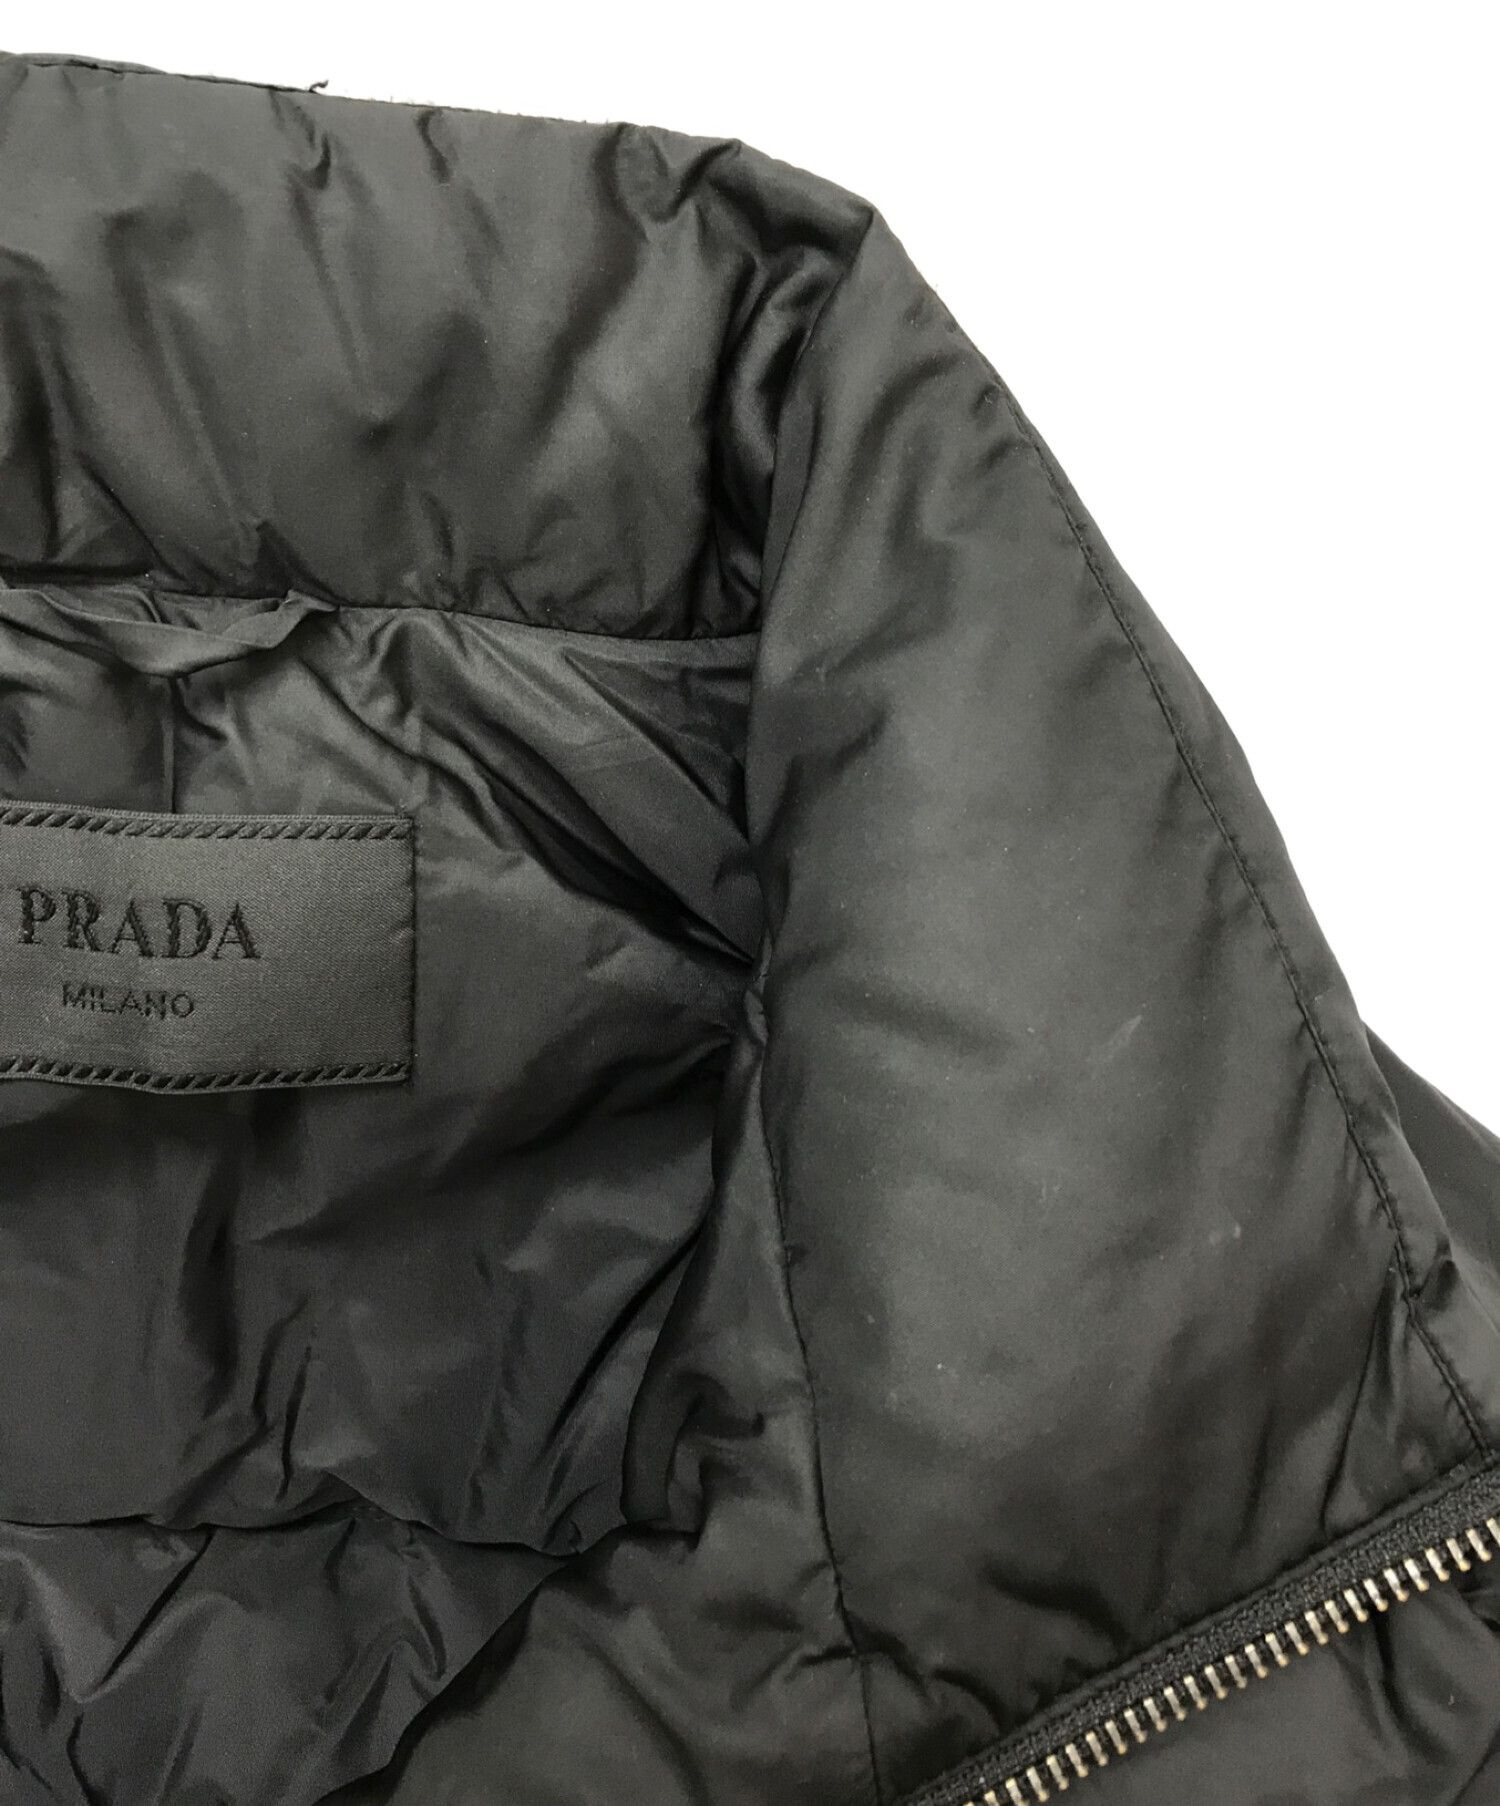 PRADA (プラダ) NYLON PIUMA NERO / ダウンジャケット ブラック サイズ 